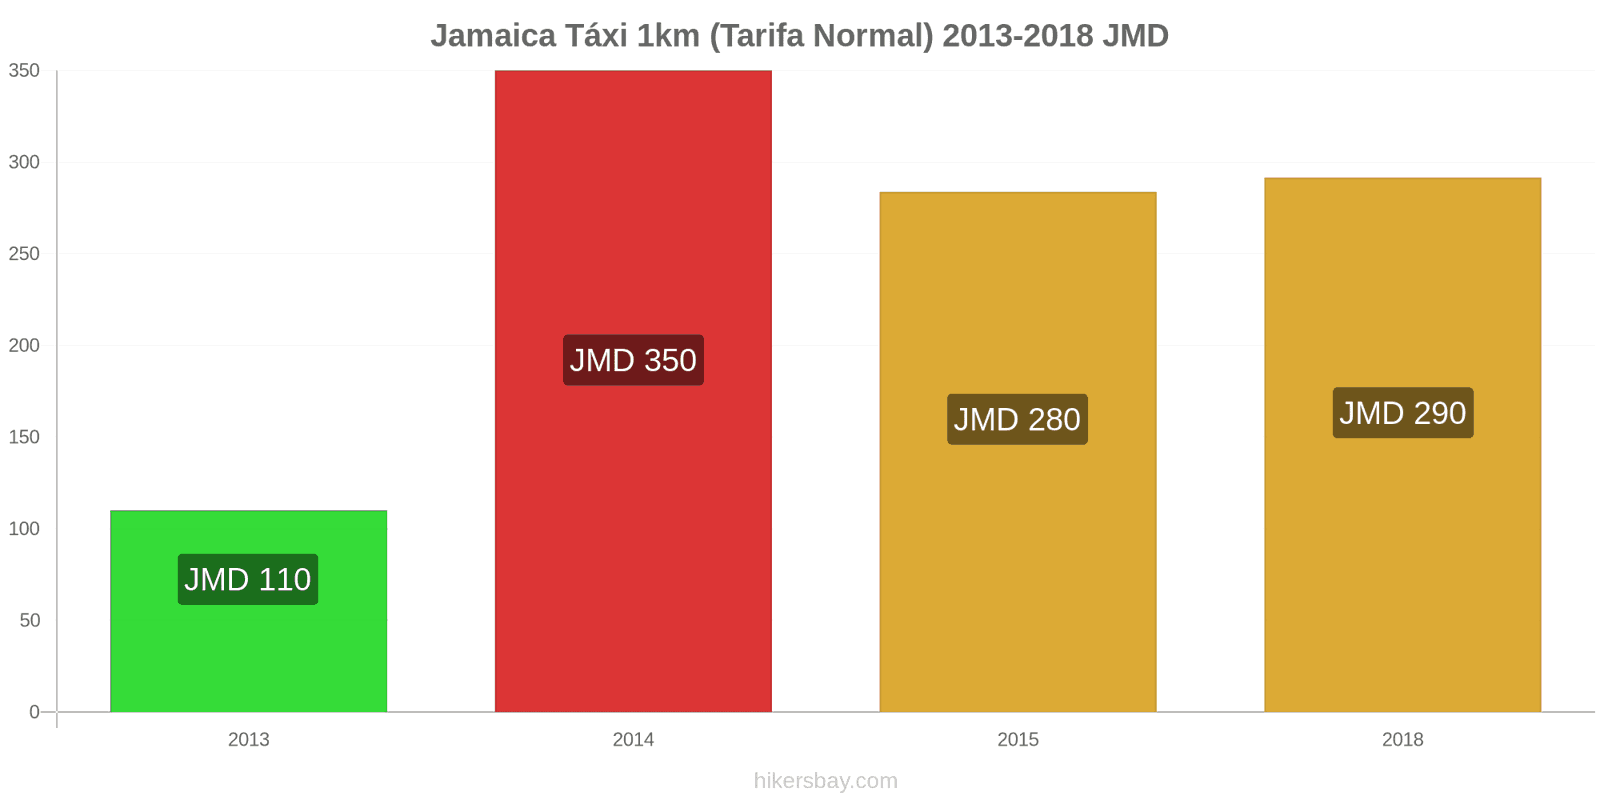 Jamaica mudanças de preços Táxi 1km (Tarifa Normal) hikersbay.com